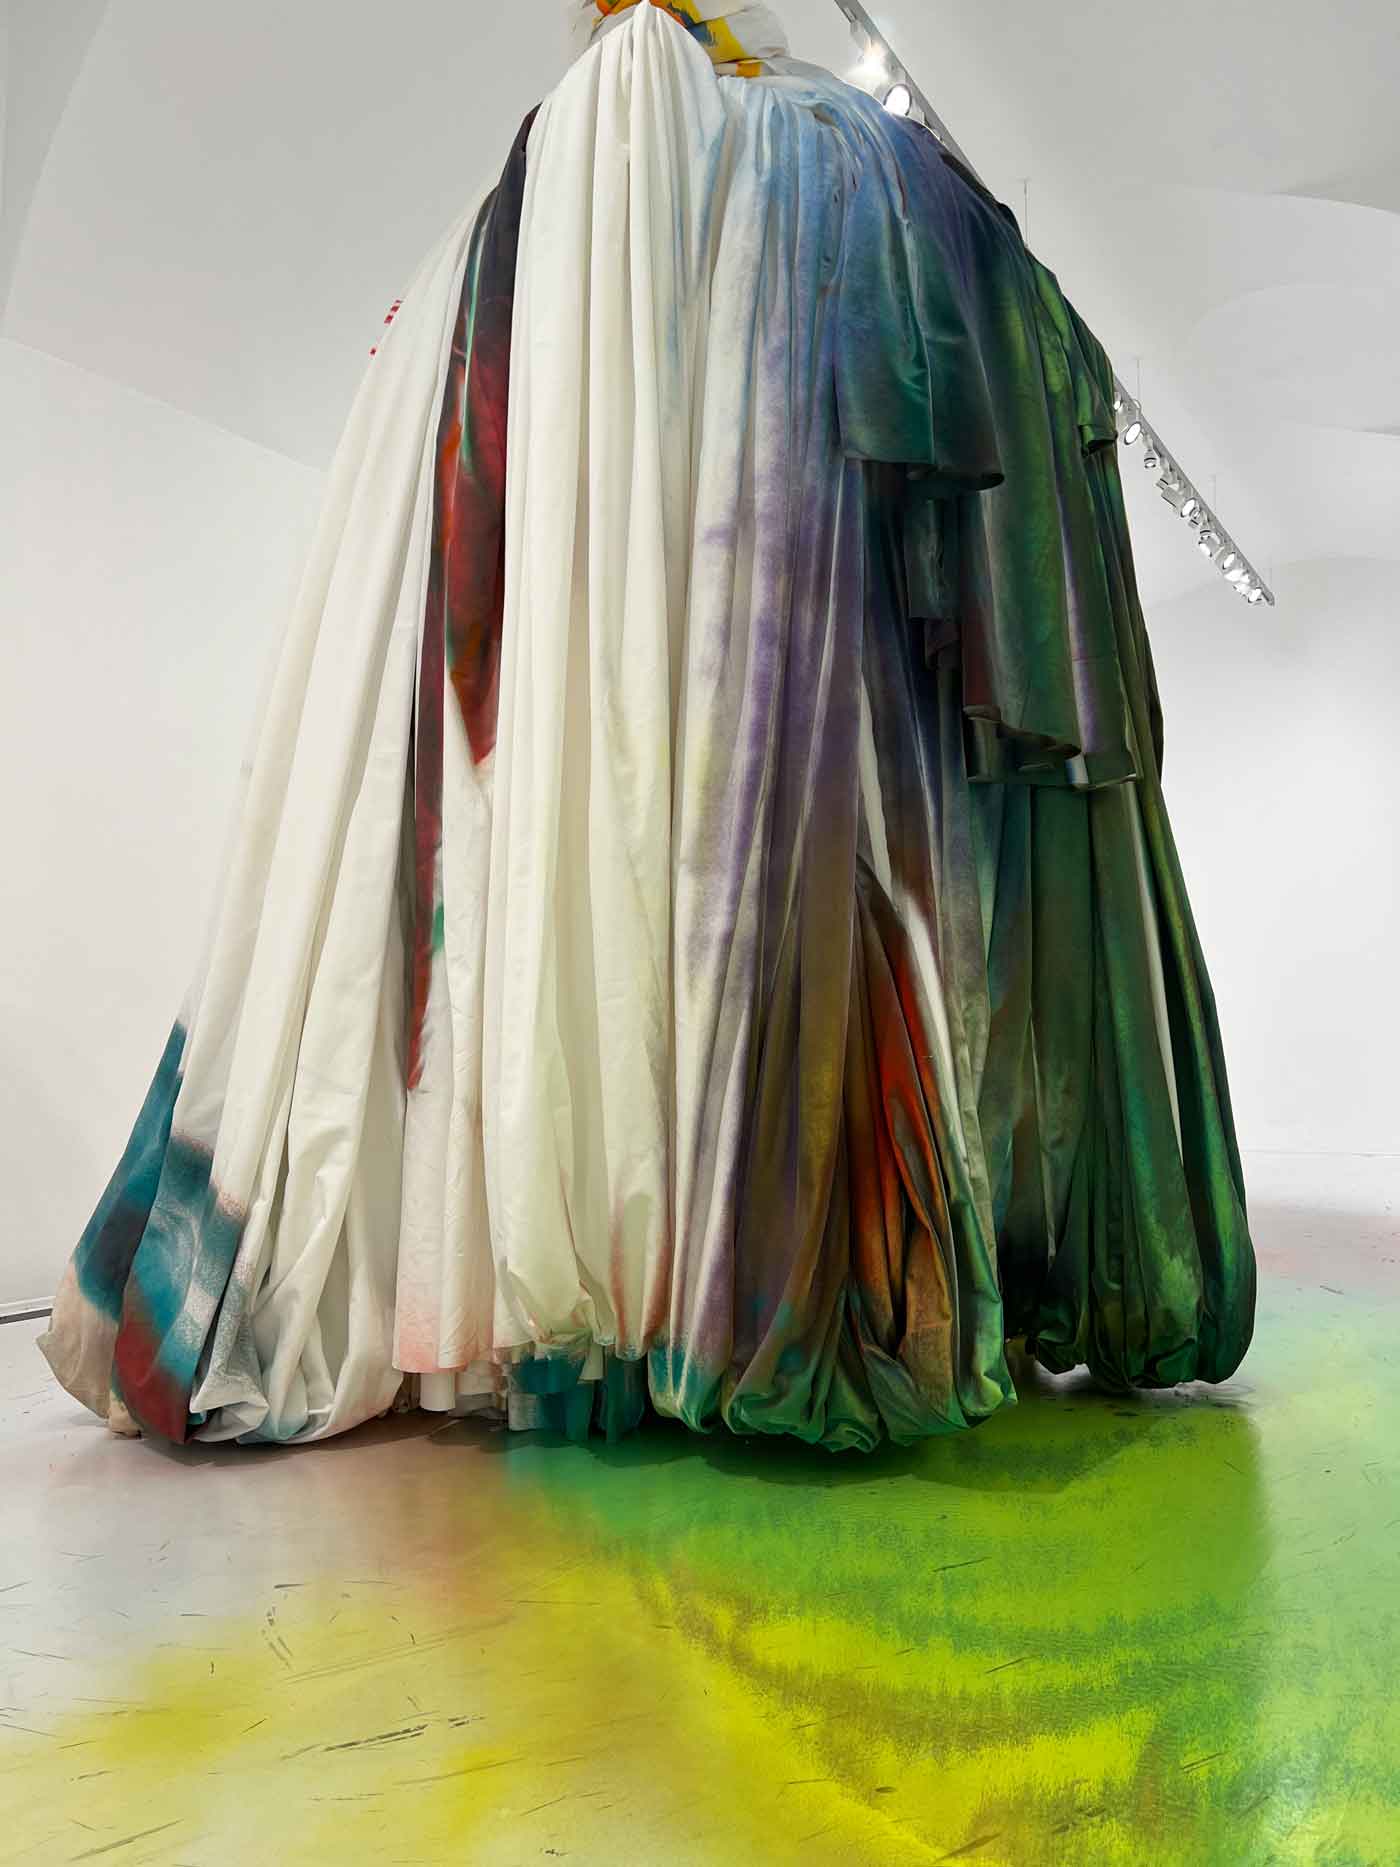 Kunstinstallation auf hängenden Textilien, die mit Farbe besprüht wurden